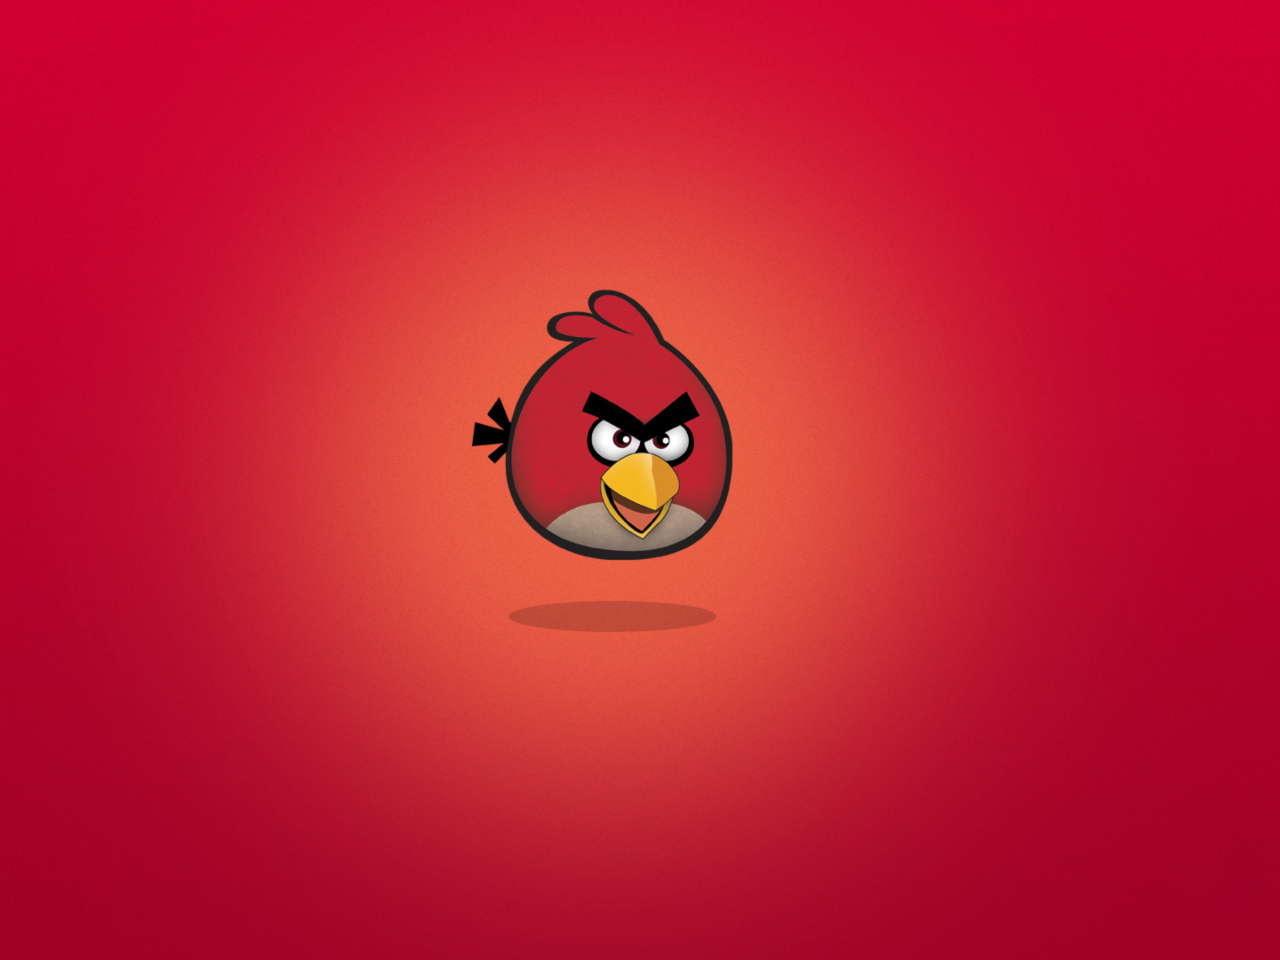 Обои Angry Birds Red 1280x960